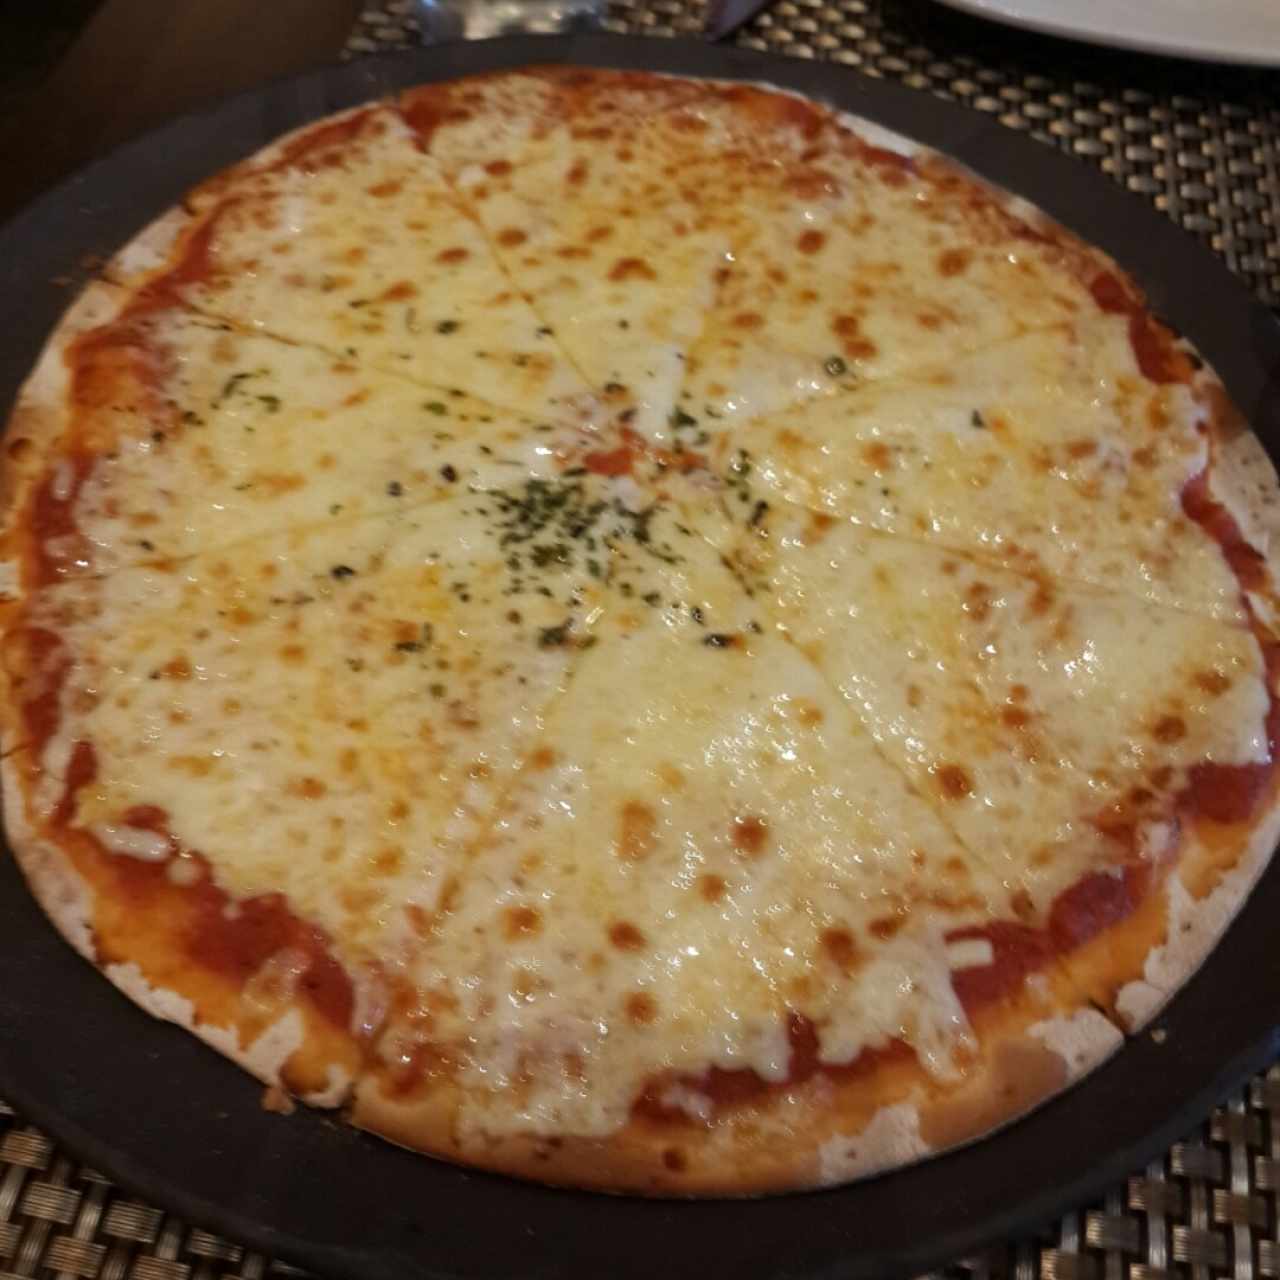 Pizzas - Margarita